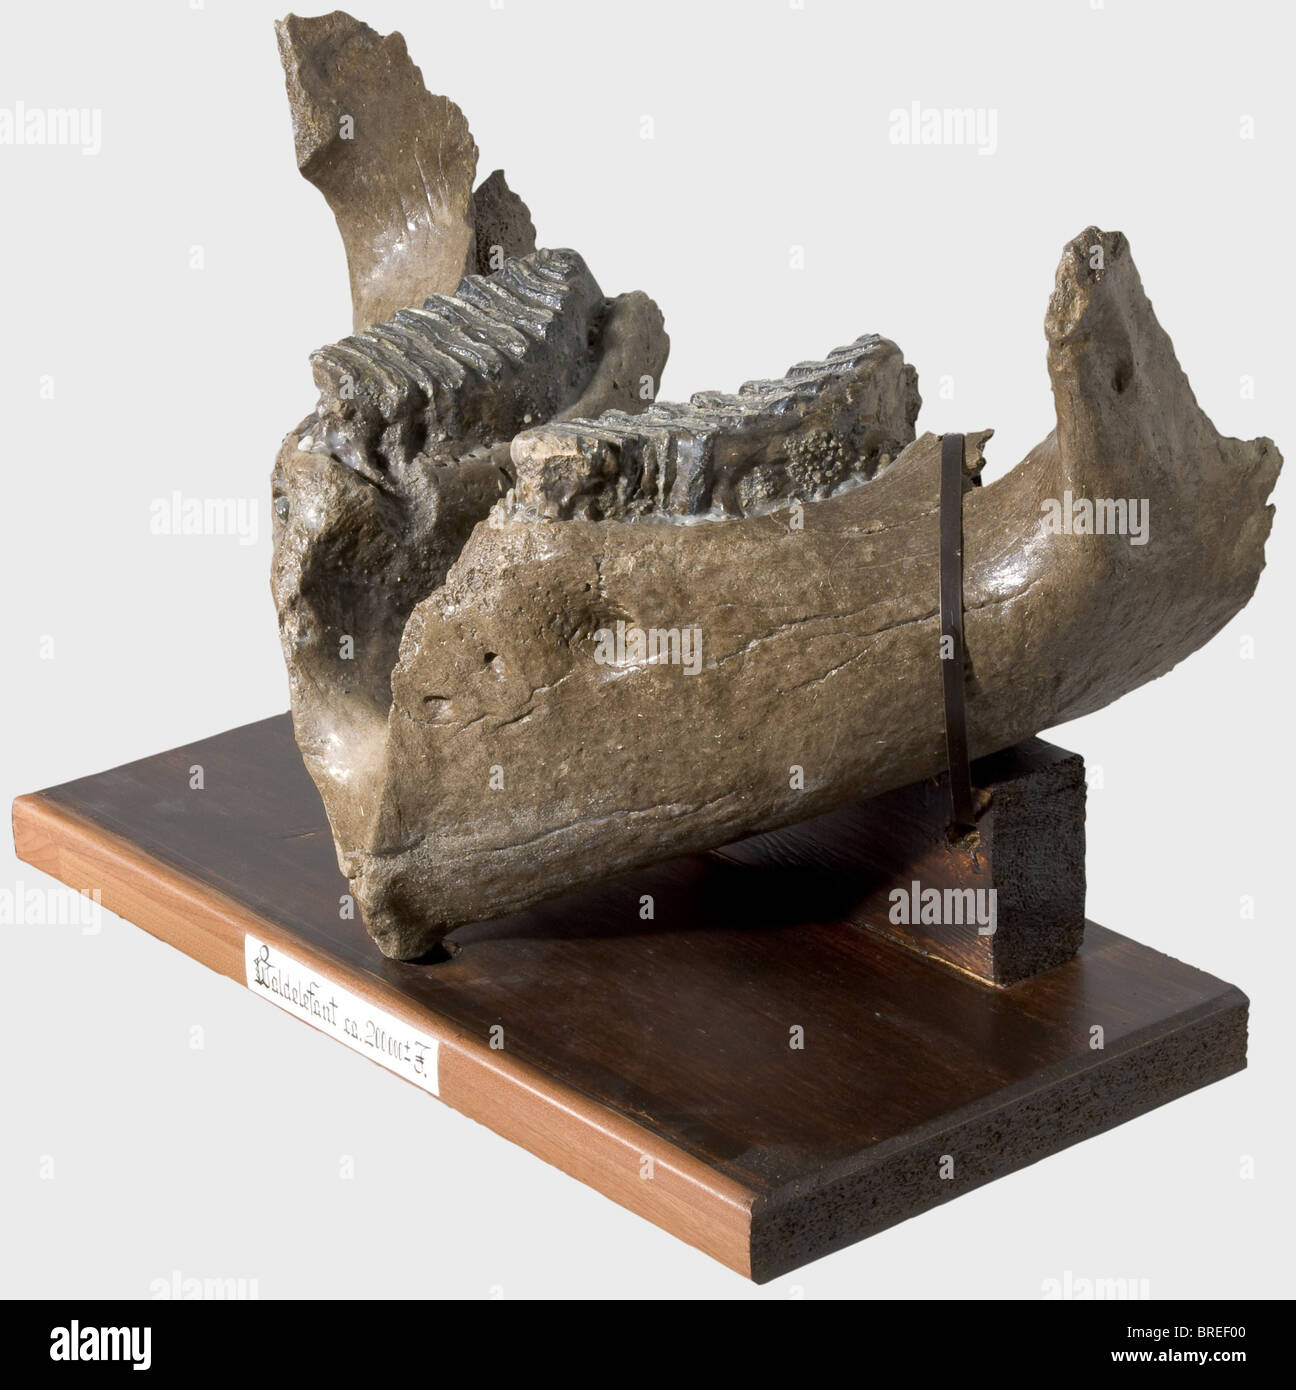 Ein Unterkiefer eines mitteleuropäischen geradlinigen Elefanten, ca. 200.000 Jahre alter Sturdy Unterkiefer eines geradlinigen Elefanten (Elephas antiquus) mit zwei erhaltenen, gezähnten Molaren. Auf einem Holzsockel montiert. Breite 55 cm, Länge 34 cm. Der geradlinige Elefant bewohnt Europa und den Nahen Osten während des Mittleren und Späten Pleistozäns. Genau wie die heutigen Elefantenarten wies der Unterkiefer des Elephas antiquus weniger Zähne auf. Es hatte eine Schulterhöhe von 4,2 Metern und war damit größer als das wollige Mammut. Historisch, historisch, vorgeschichte, han, Stockfoto